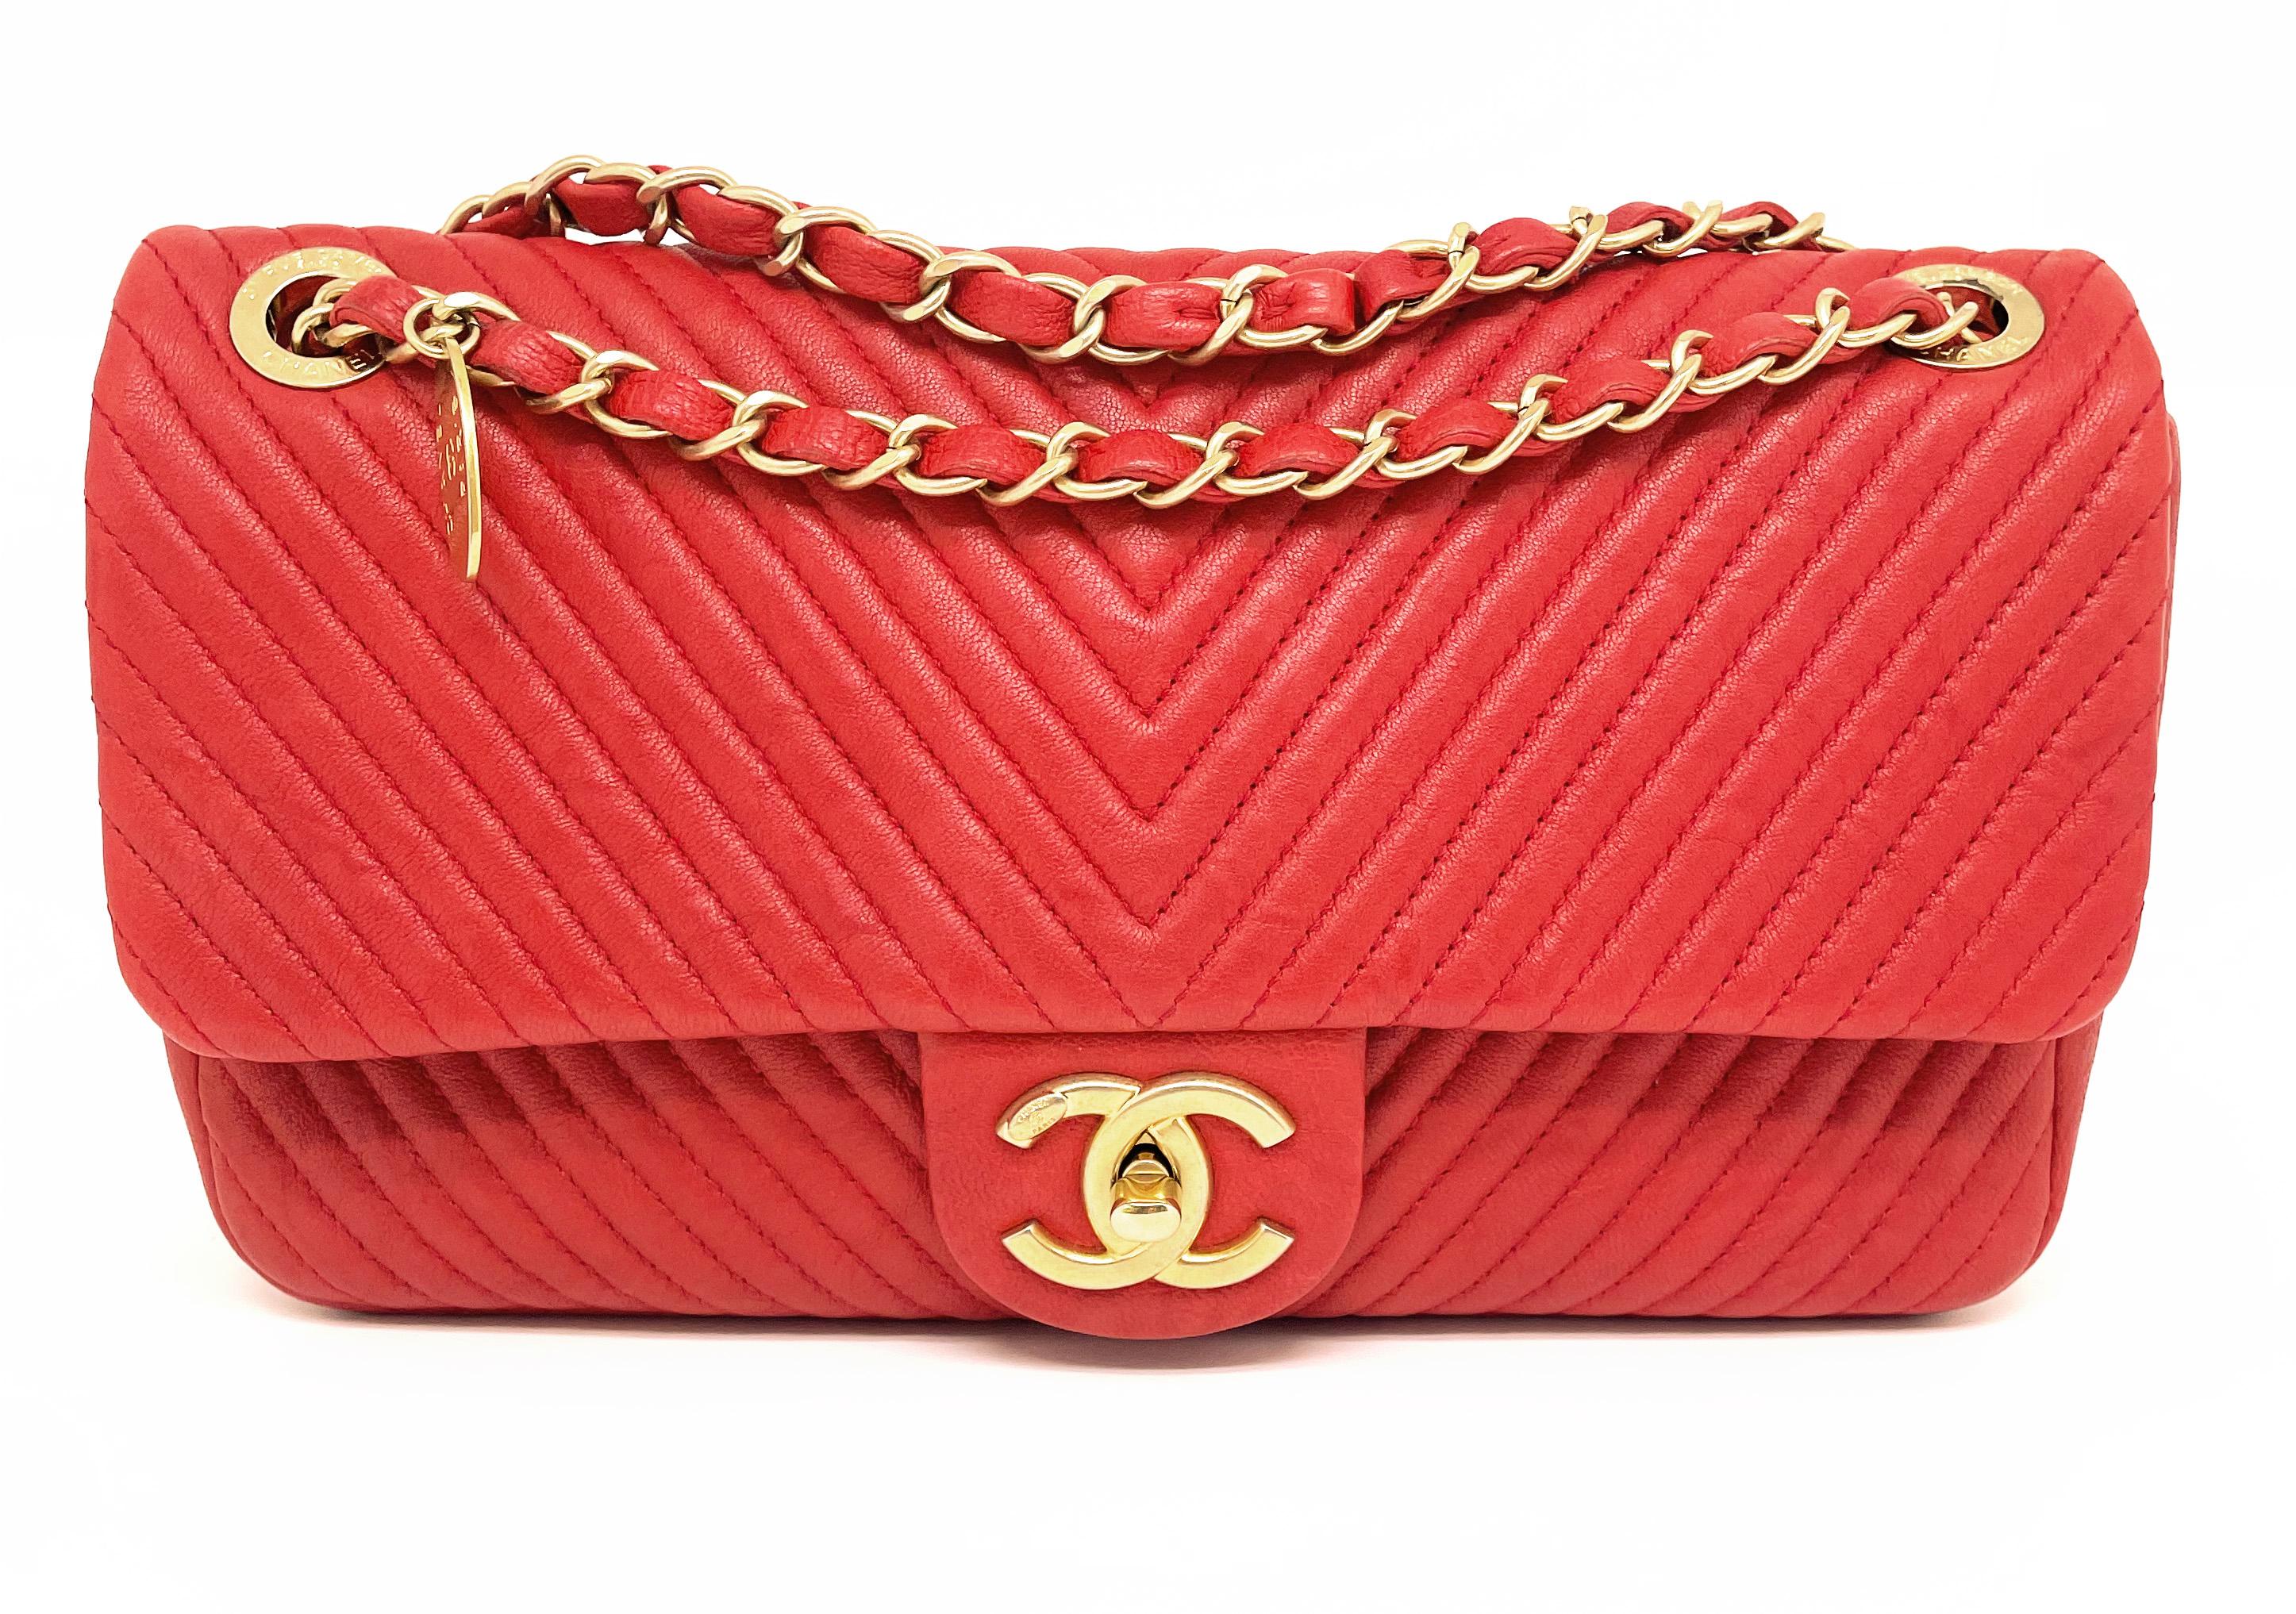 Superbe sac Chanel de 27 cm en cuir et motif Chevron rouge Valentine.
Pratique avec son rabat intérieur simple en tissu noir.
Une poche zippée pour plus de sécurité.
Ce sac est orné d'une chaîne dorée entrelacée de cuir.
Le sac peut être porté à